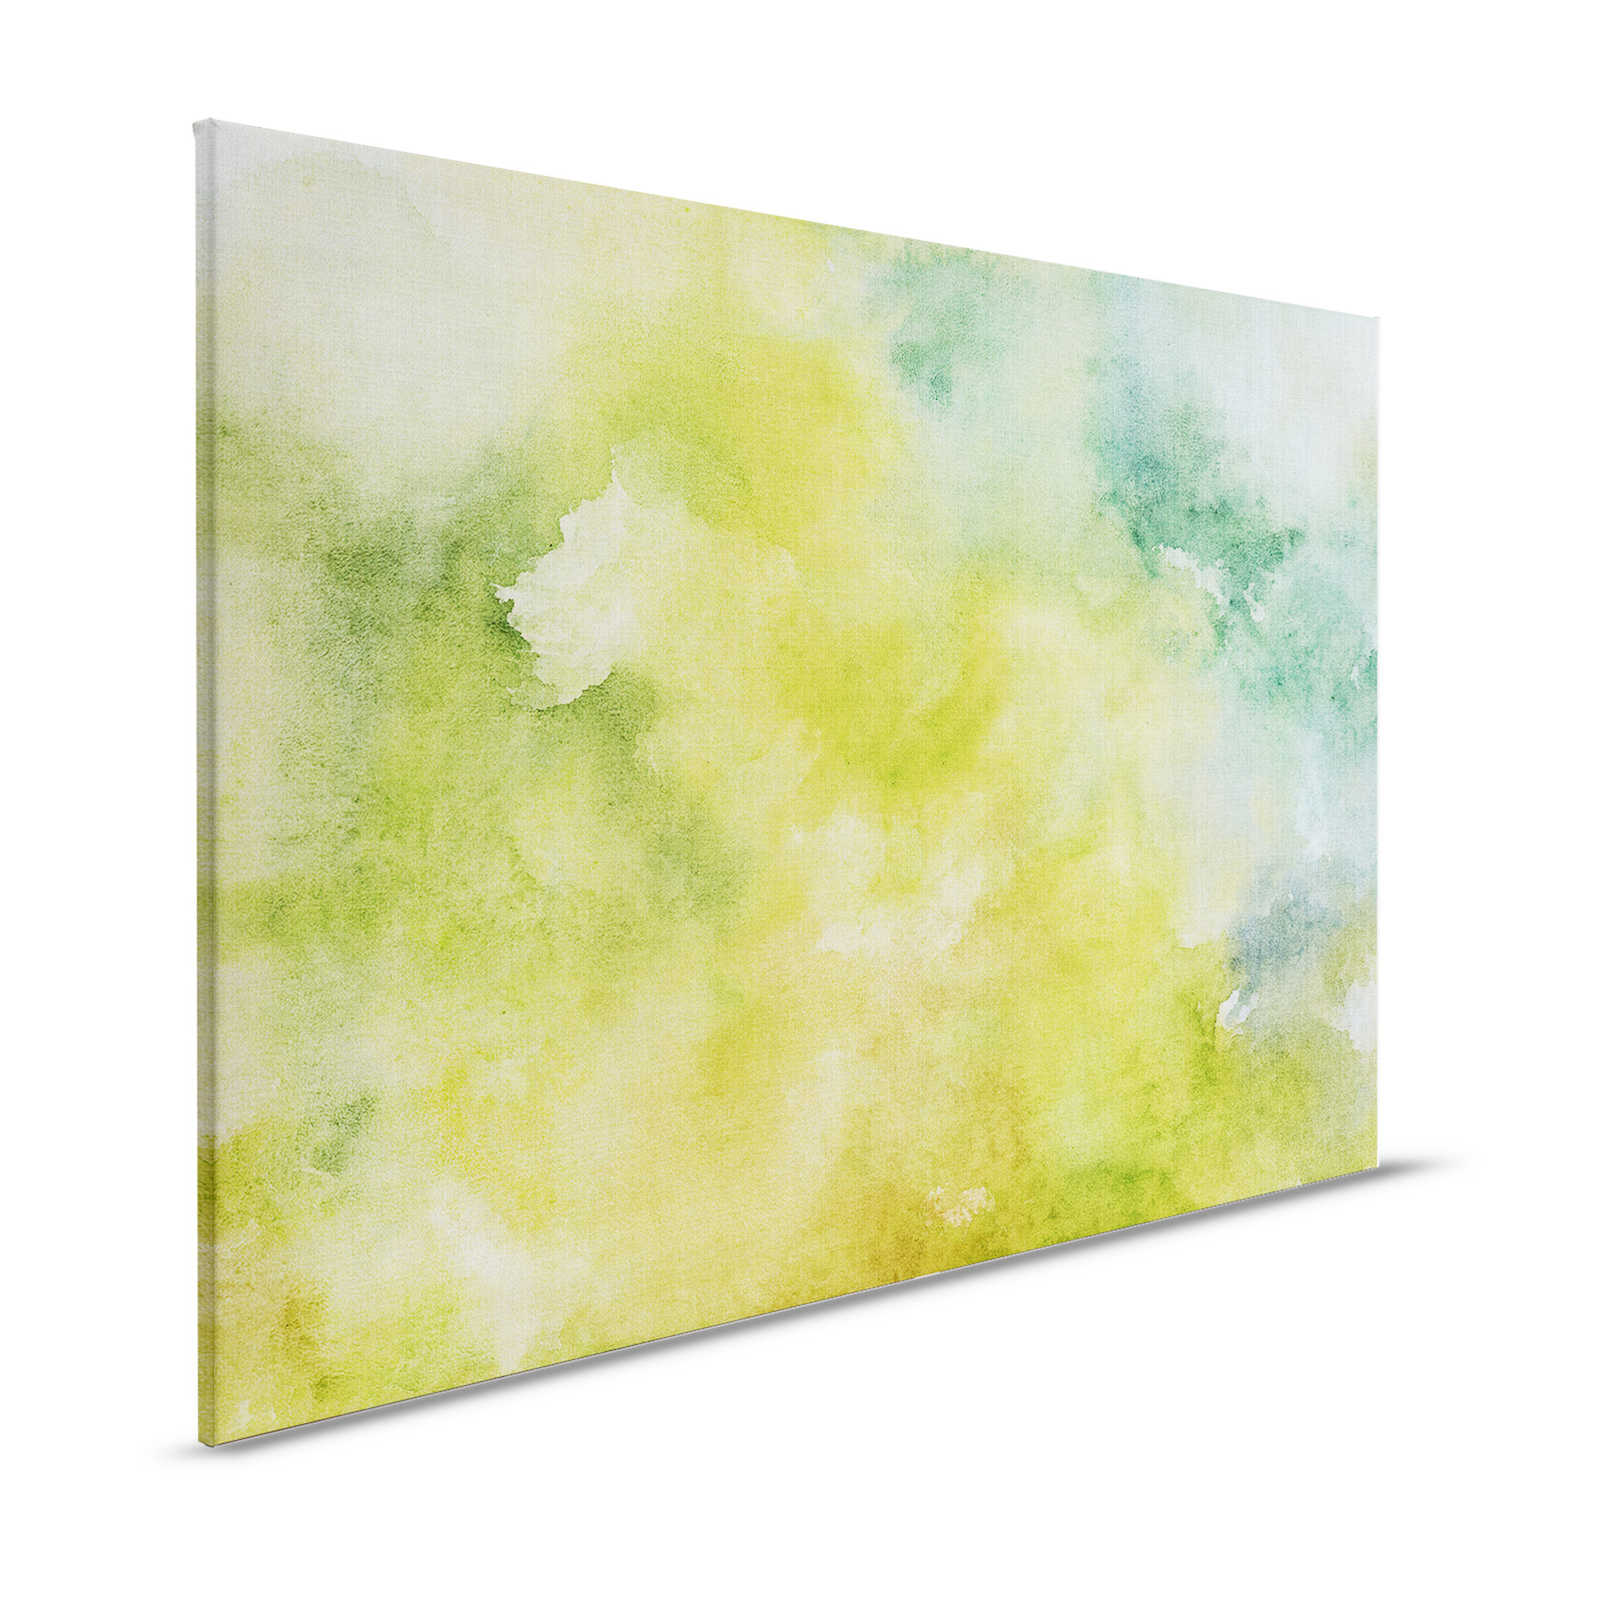 Acquerelli 3 - Motivo acquerello verde come quadro su tela in lino naturale - 1,20 m x 0,80 m
